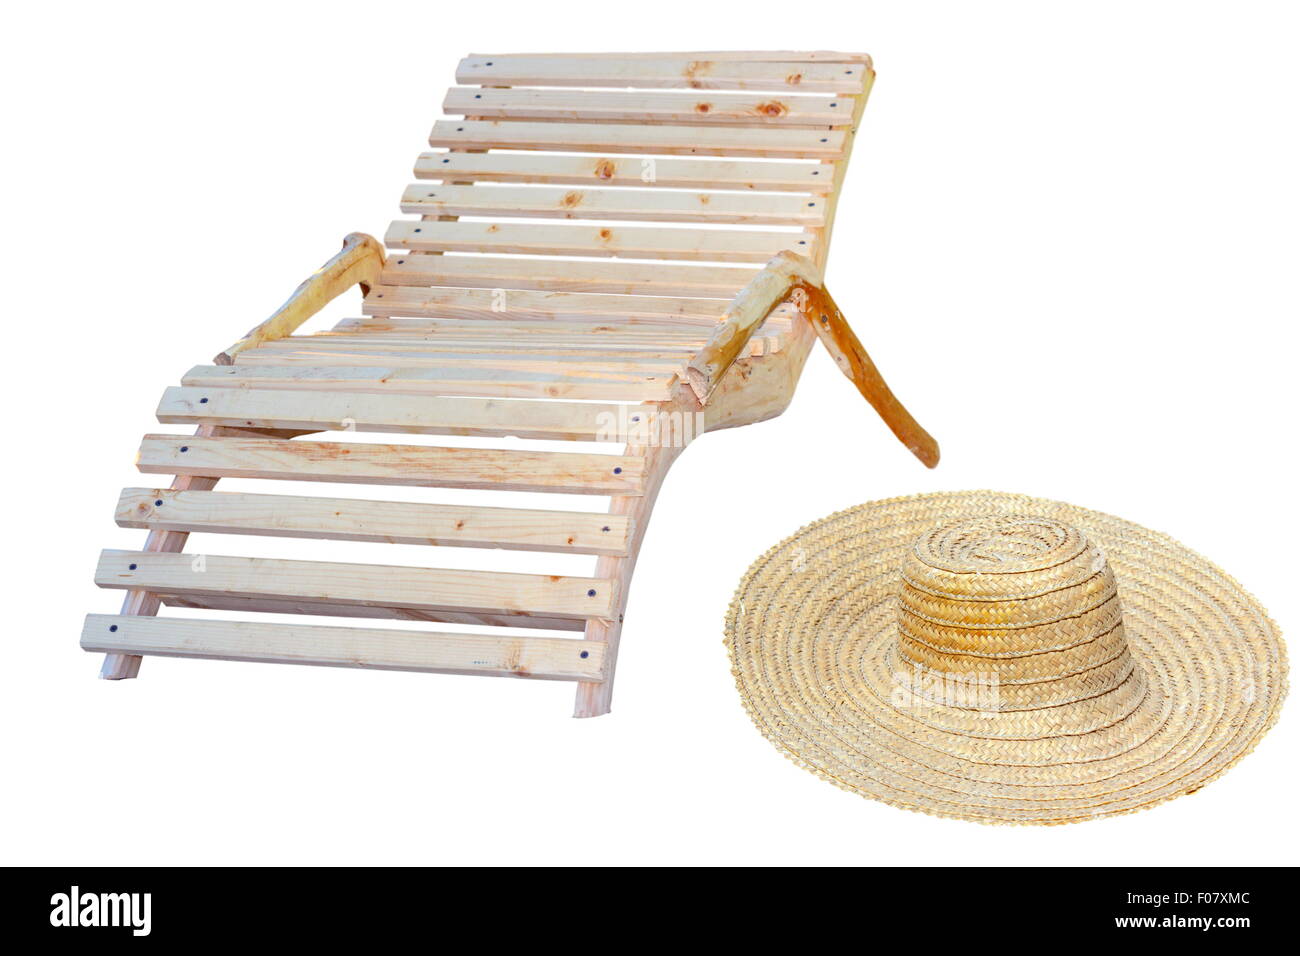 Strandzubehör für Entspannung in der Sonne - Holzstuhl und sombrero Stockfoto